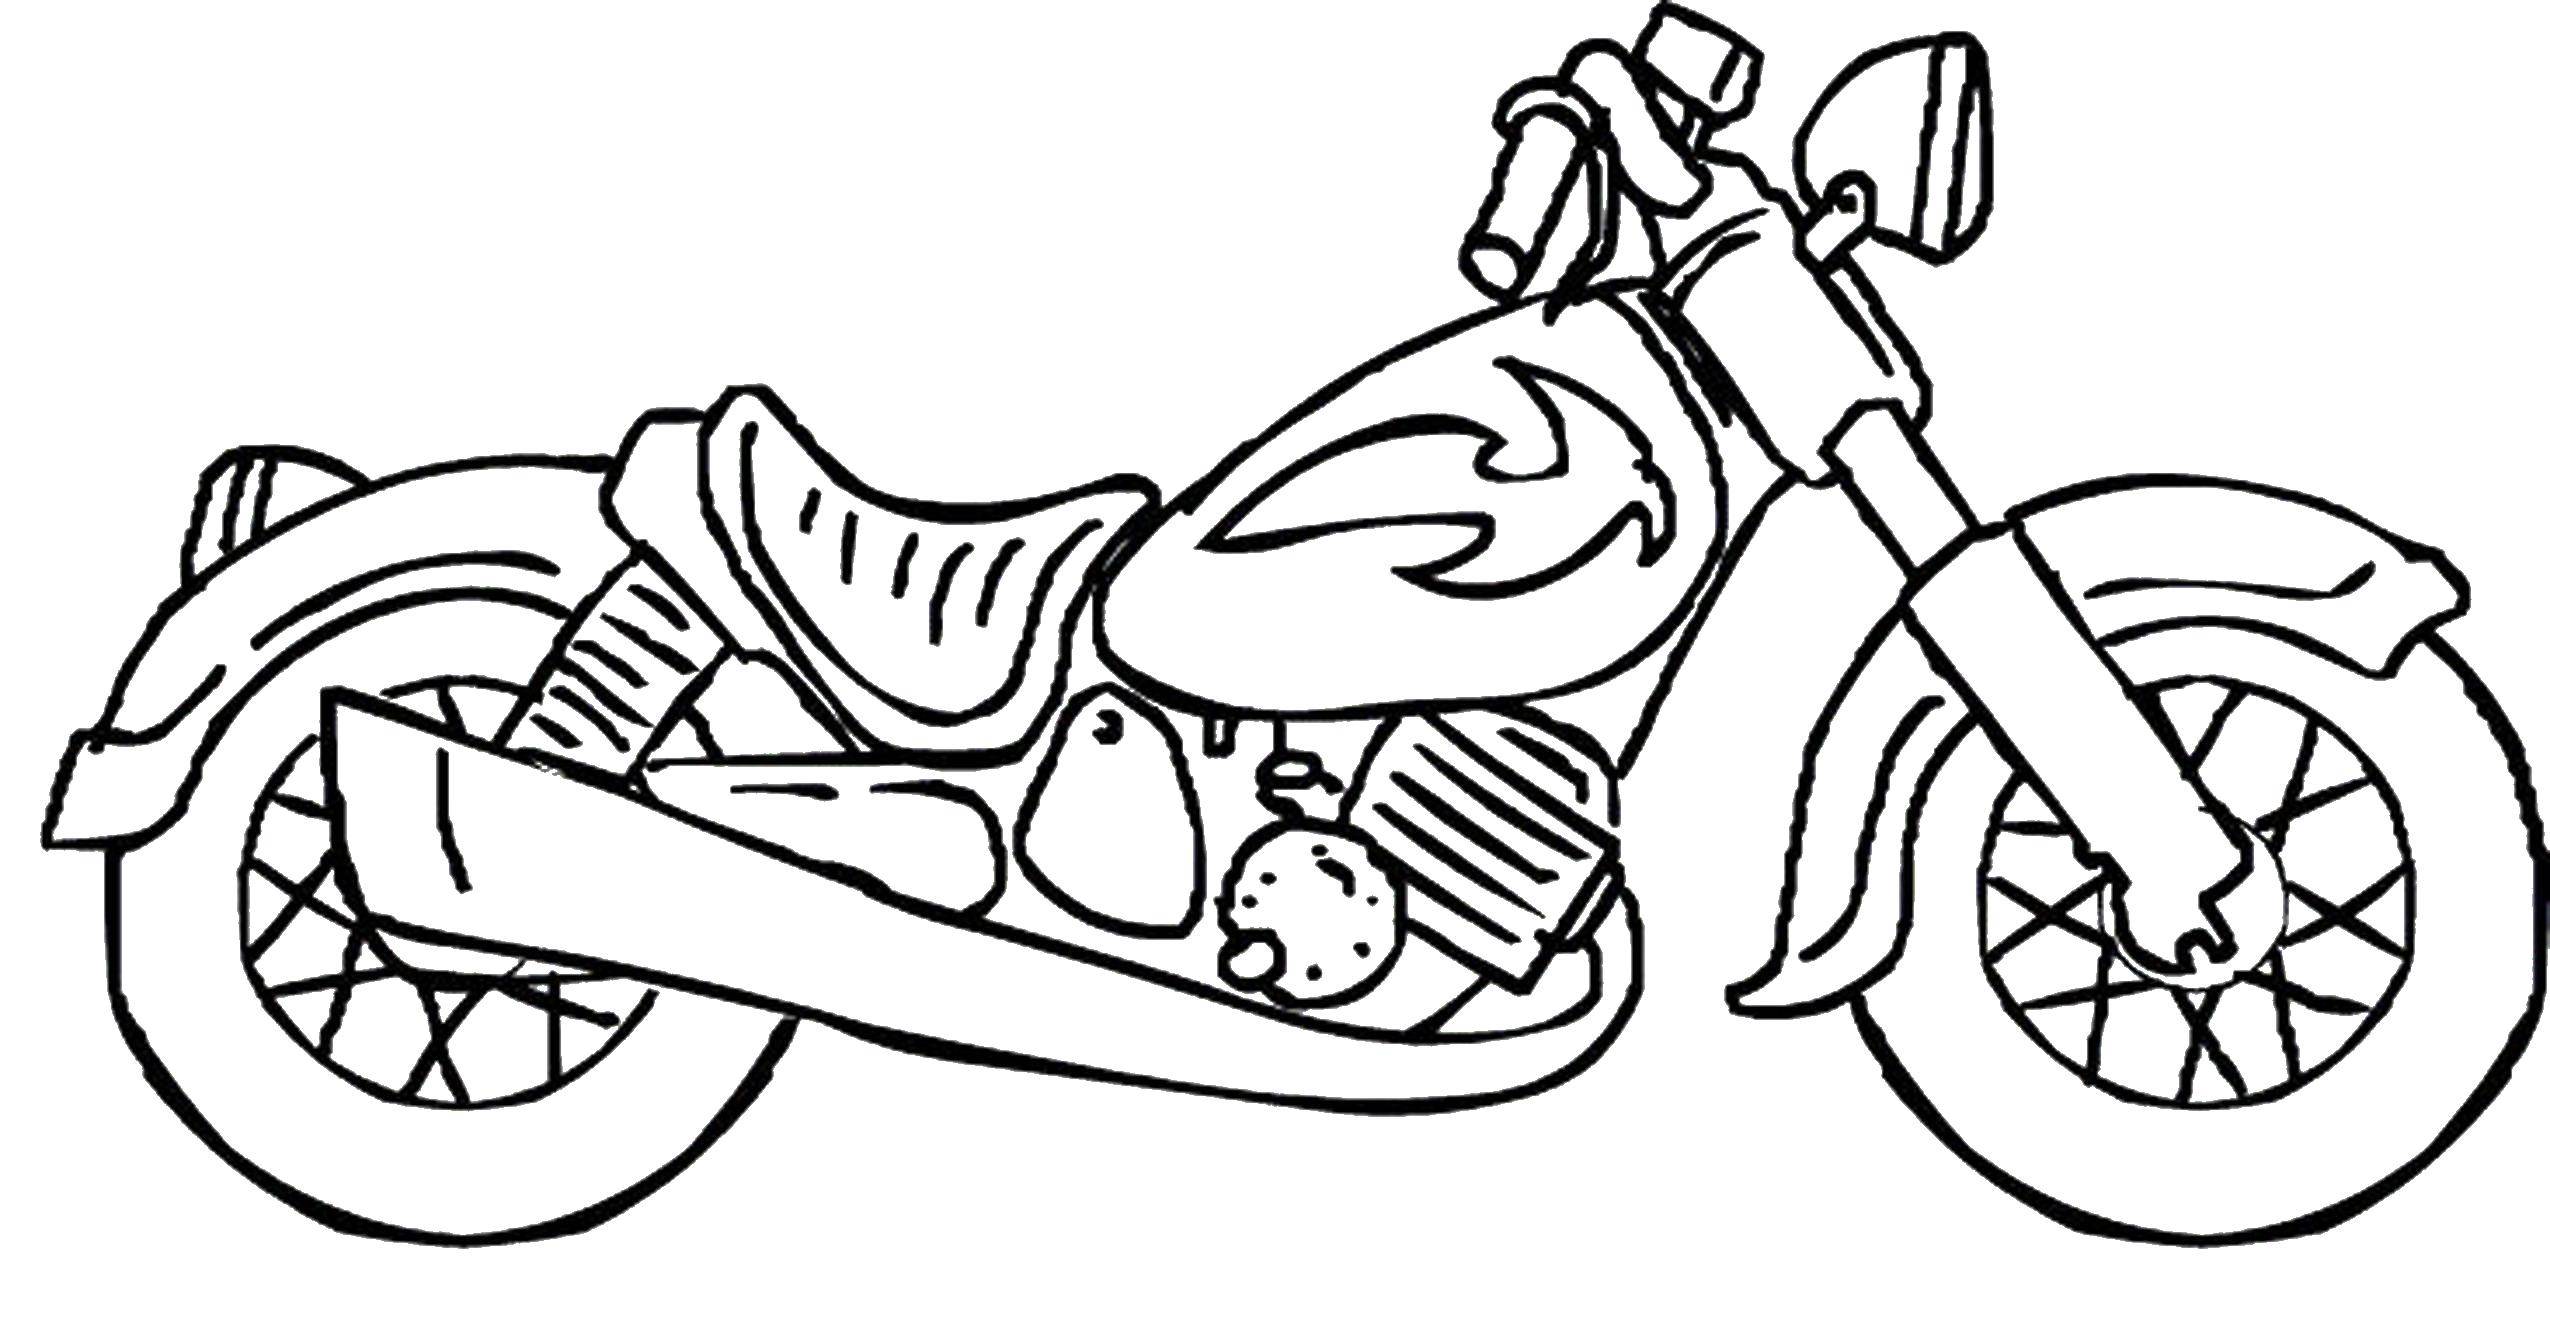 Название: Раскраска Мотобайк. Категория: Для мальчиков. Теги: мотоцикл, мотобайк.